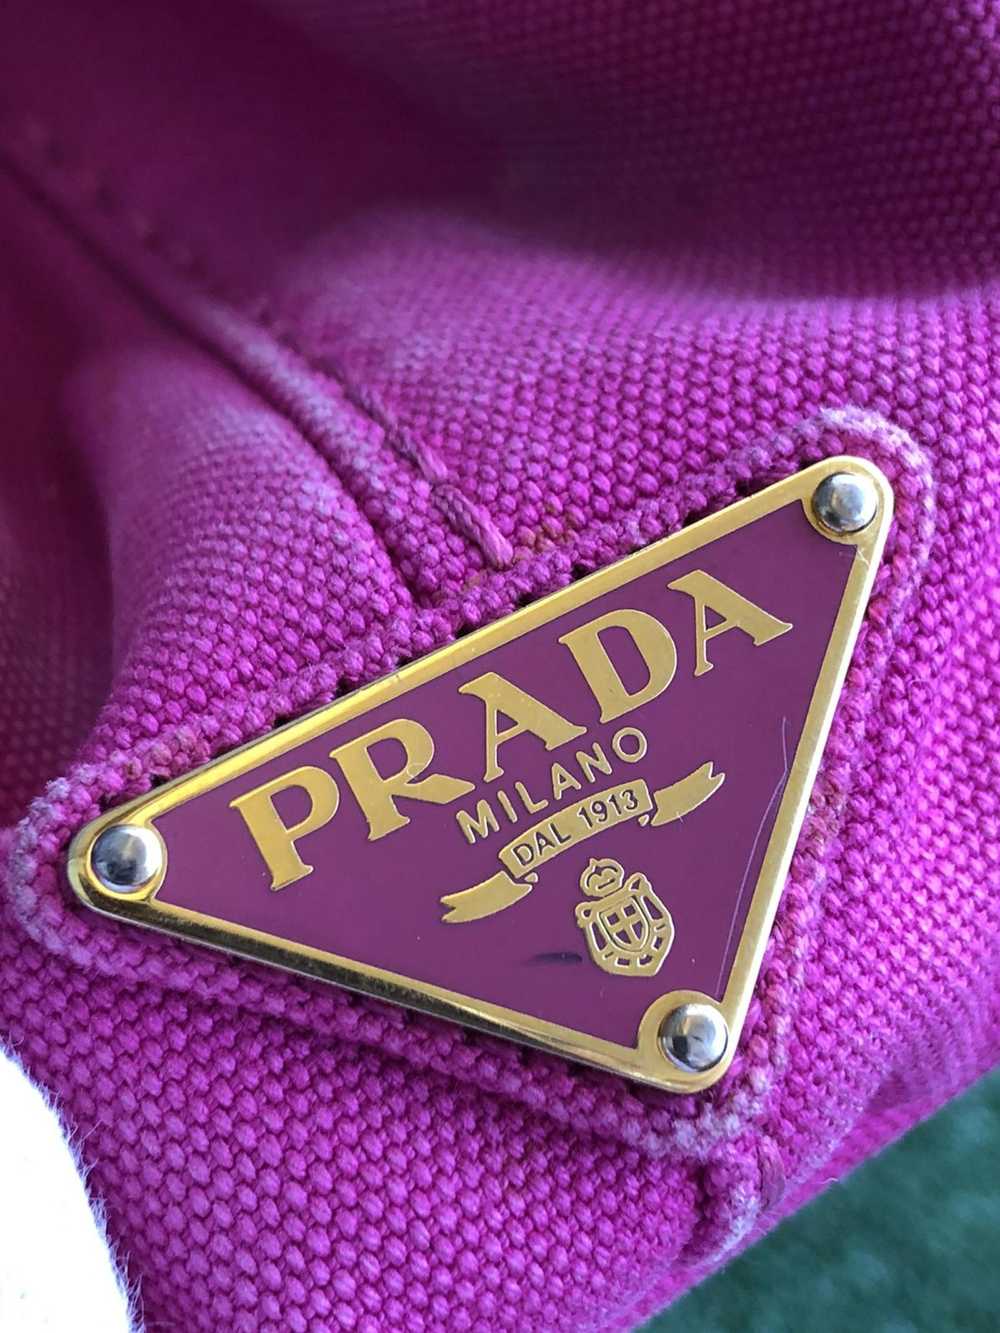 Prada Prada canapa tote bag - image 5